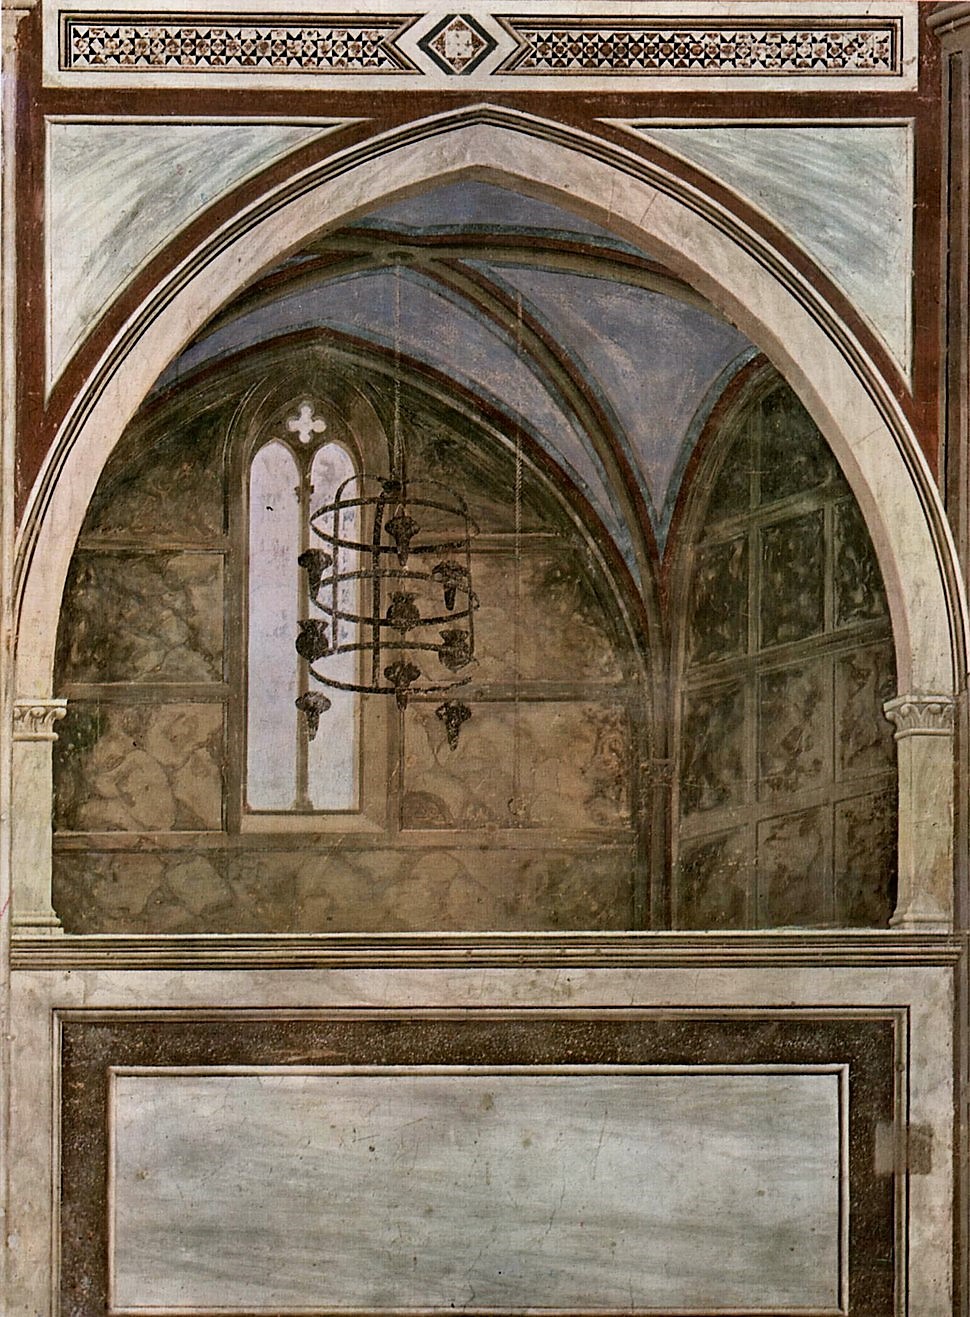 Giotto's Scrovegni Chapel in Padua